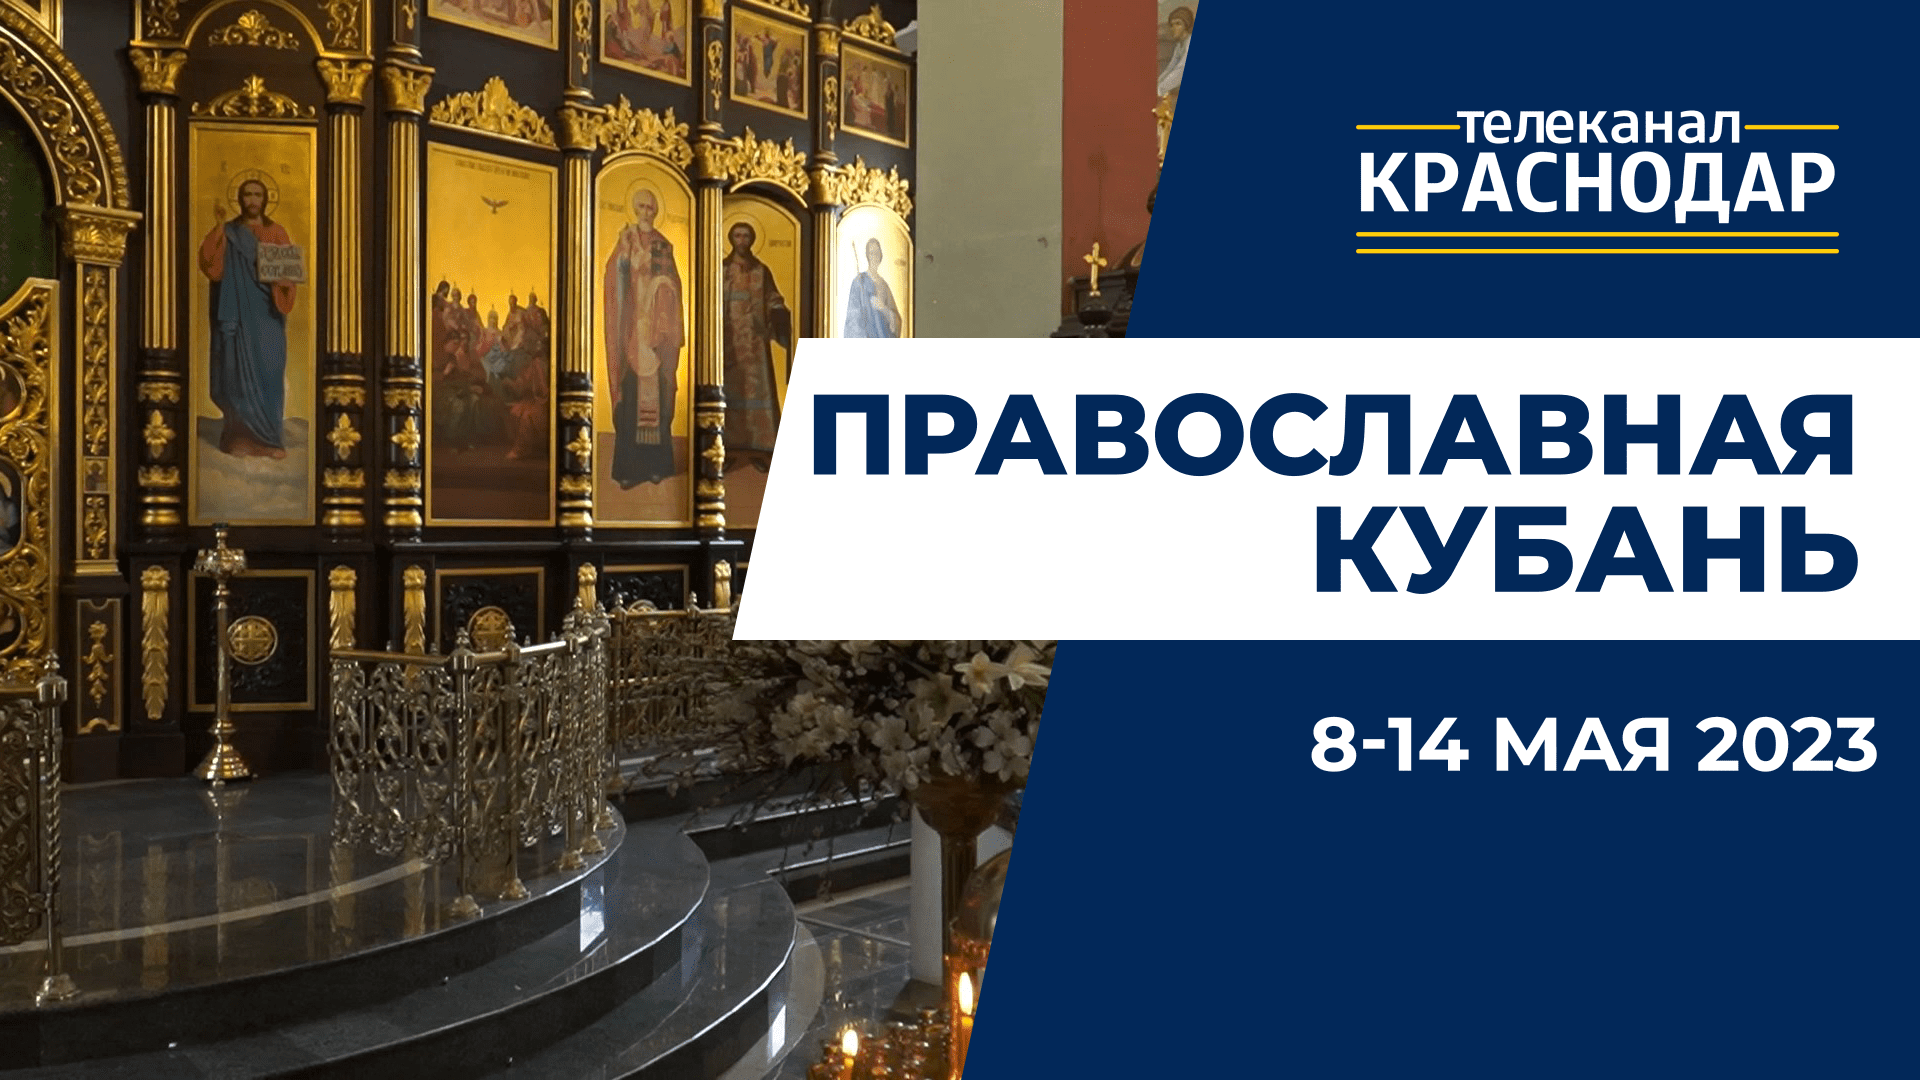 «Православная Кубань»: какие церковные праздники отмечают с 8 по 14 мая?